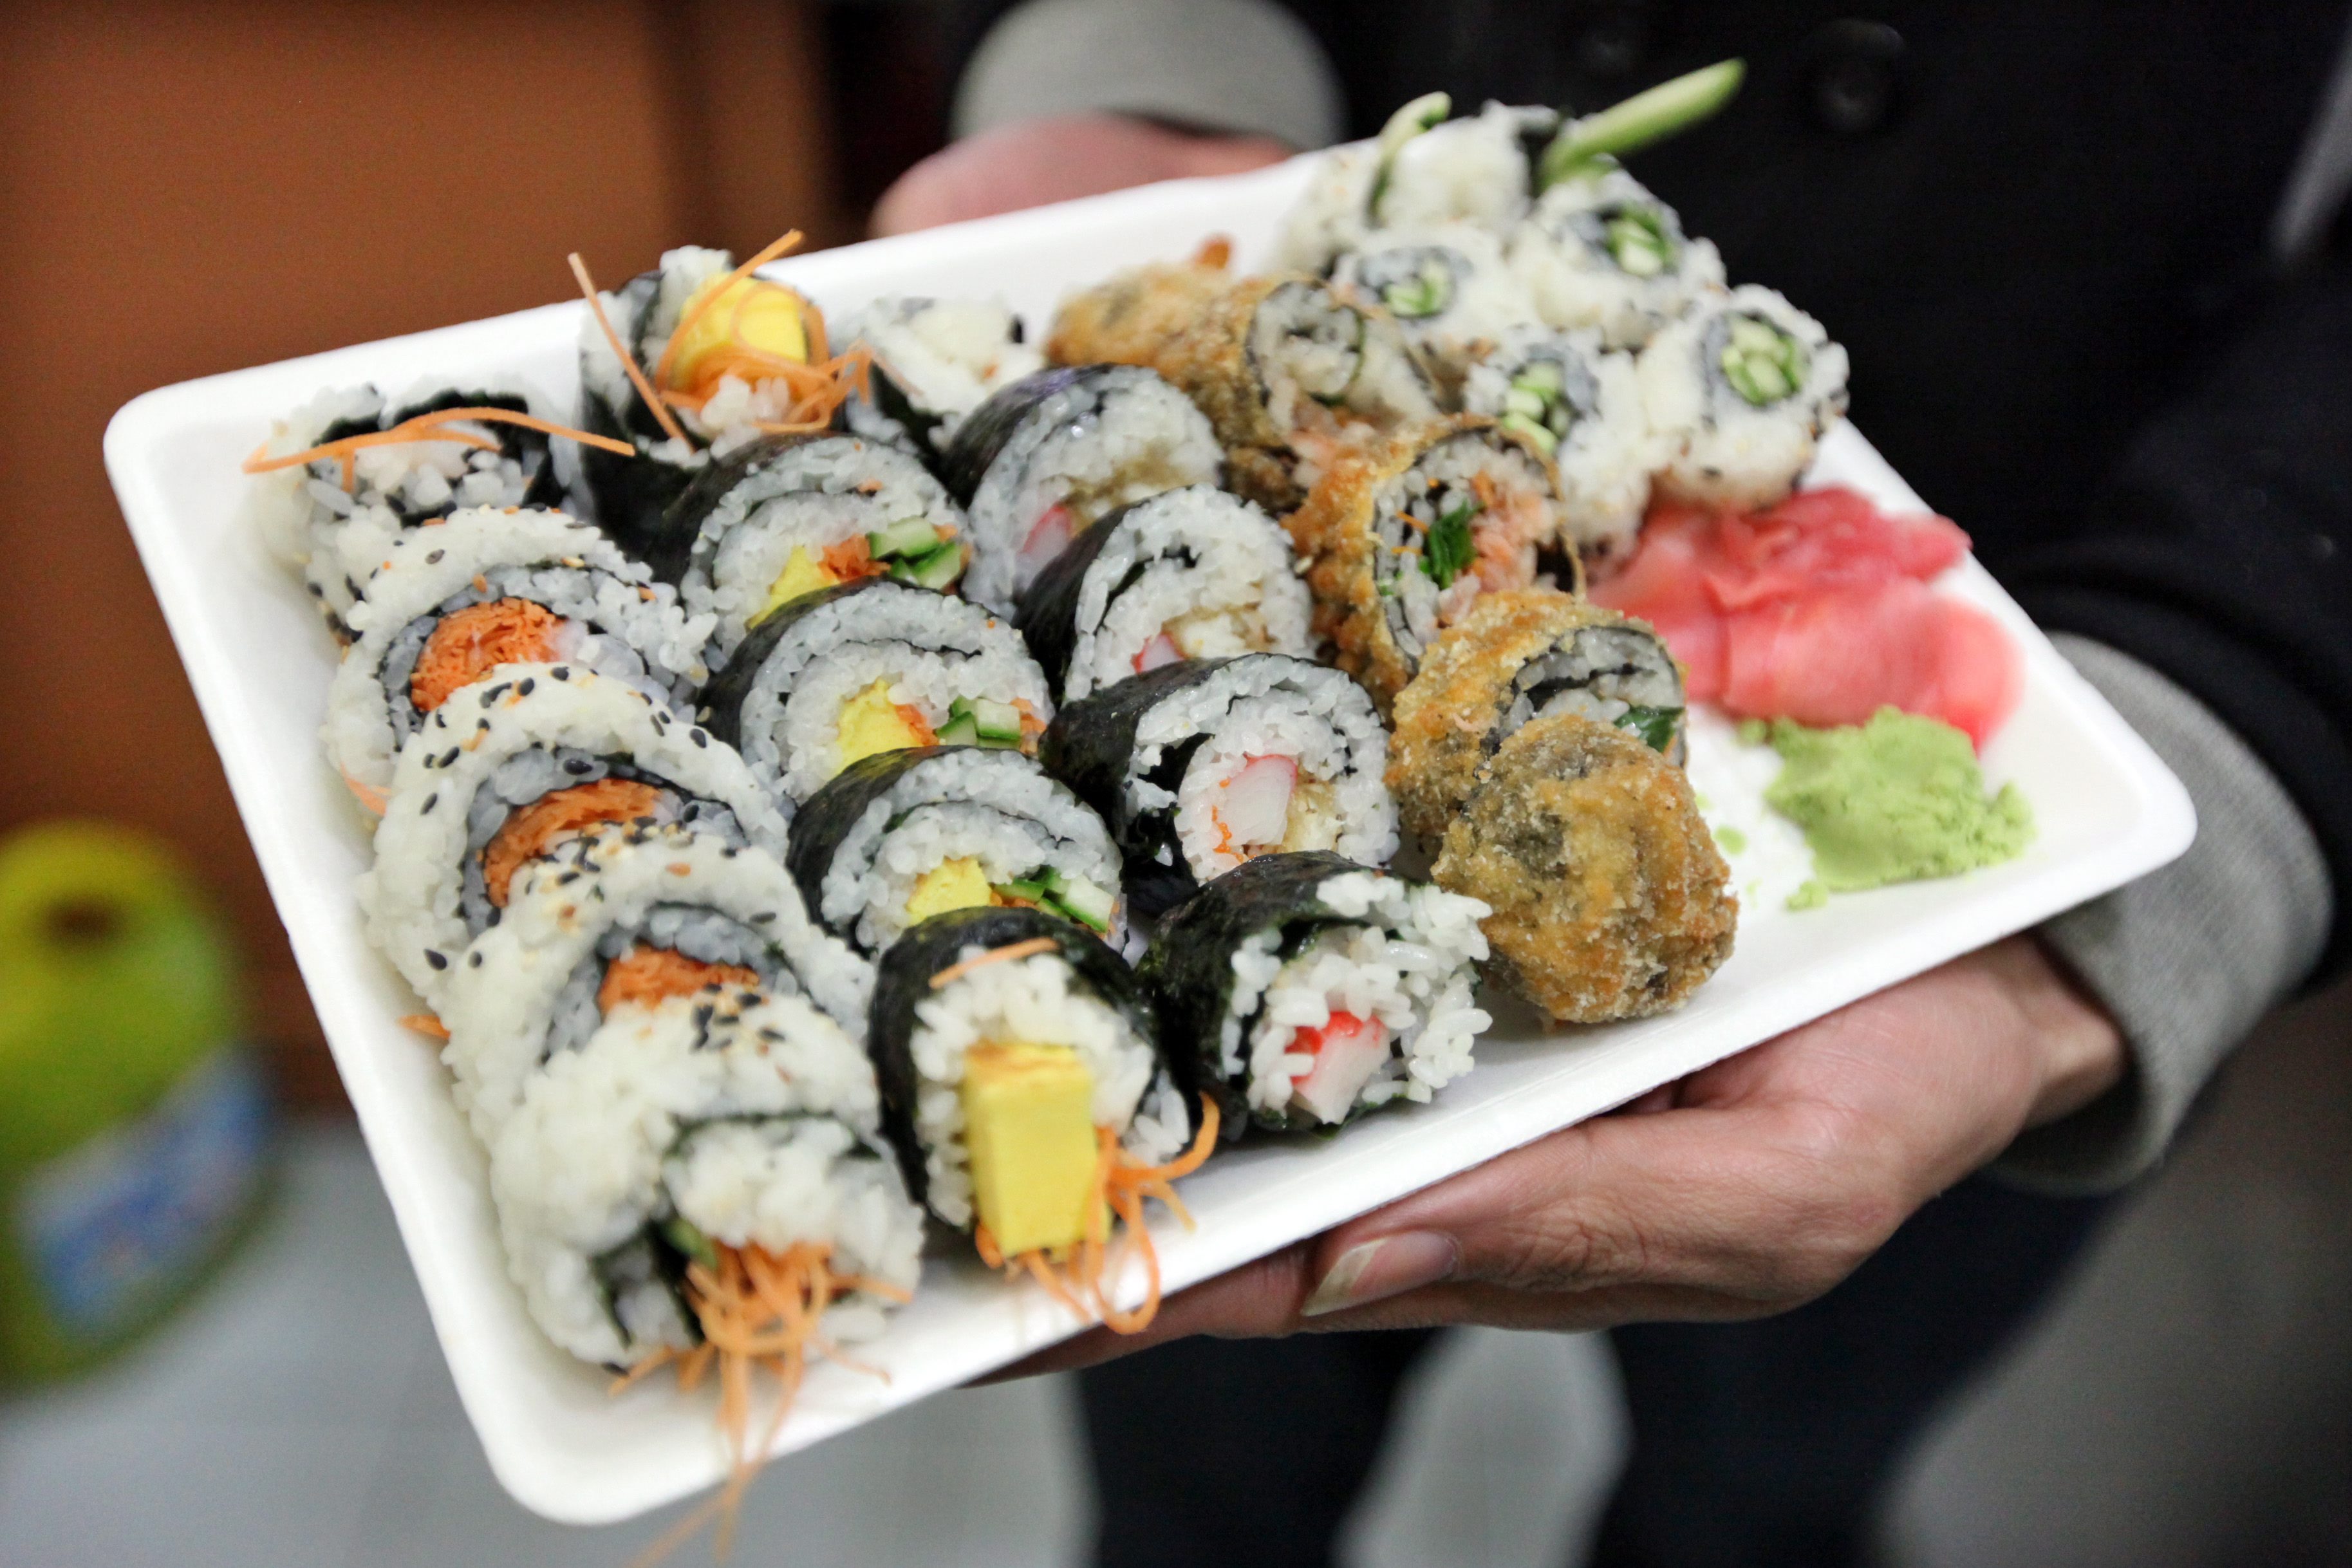 Σοβαρούς κινδύνους για την υγεία μπορεί να κρύβει η κατανάλωση σούσι